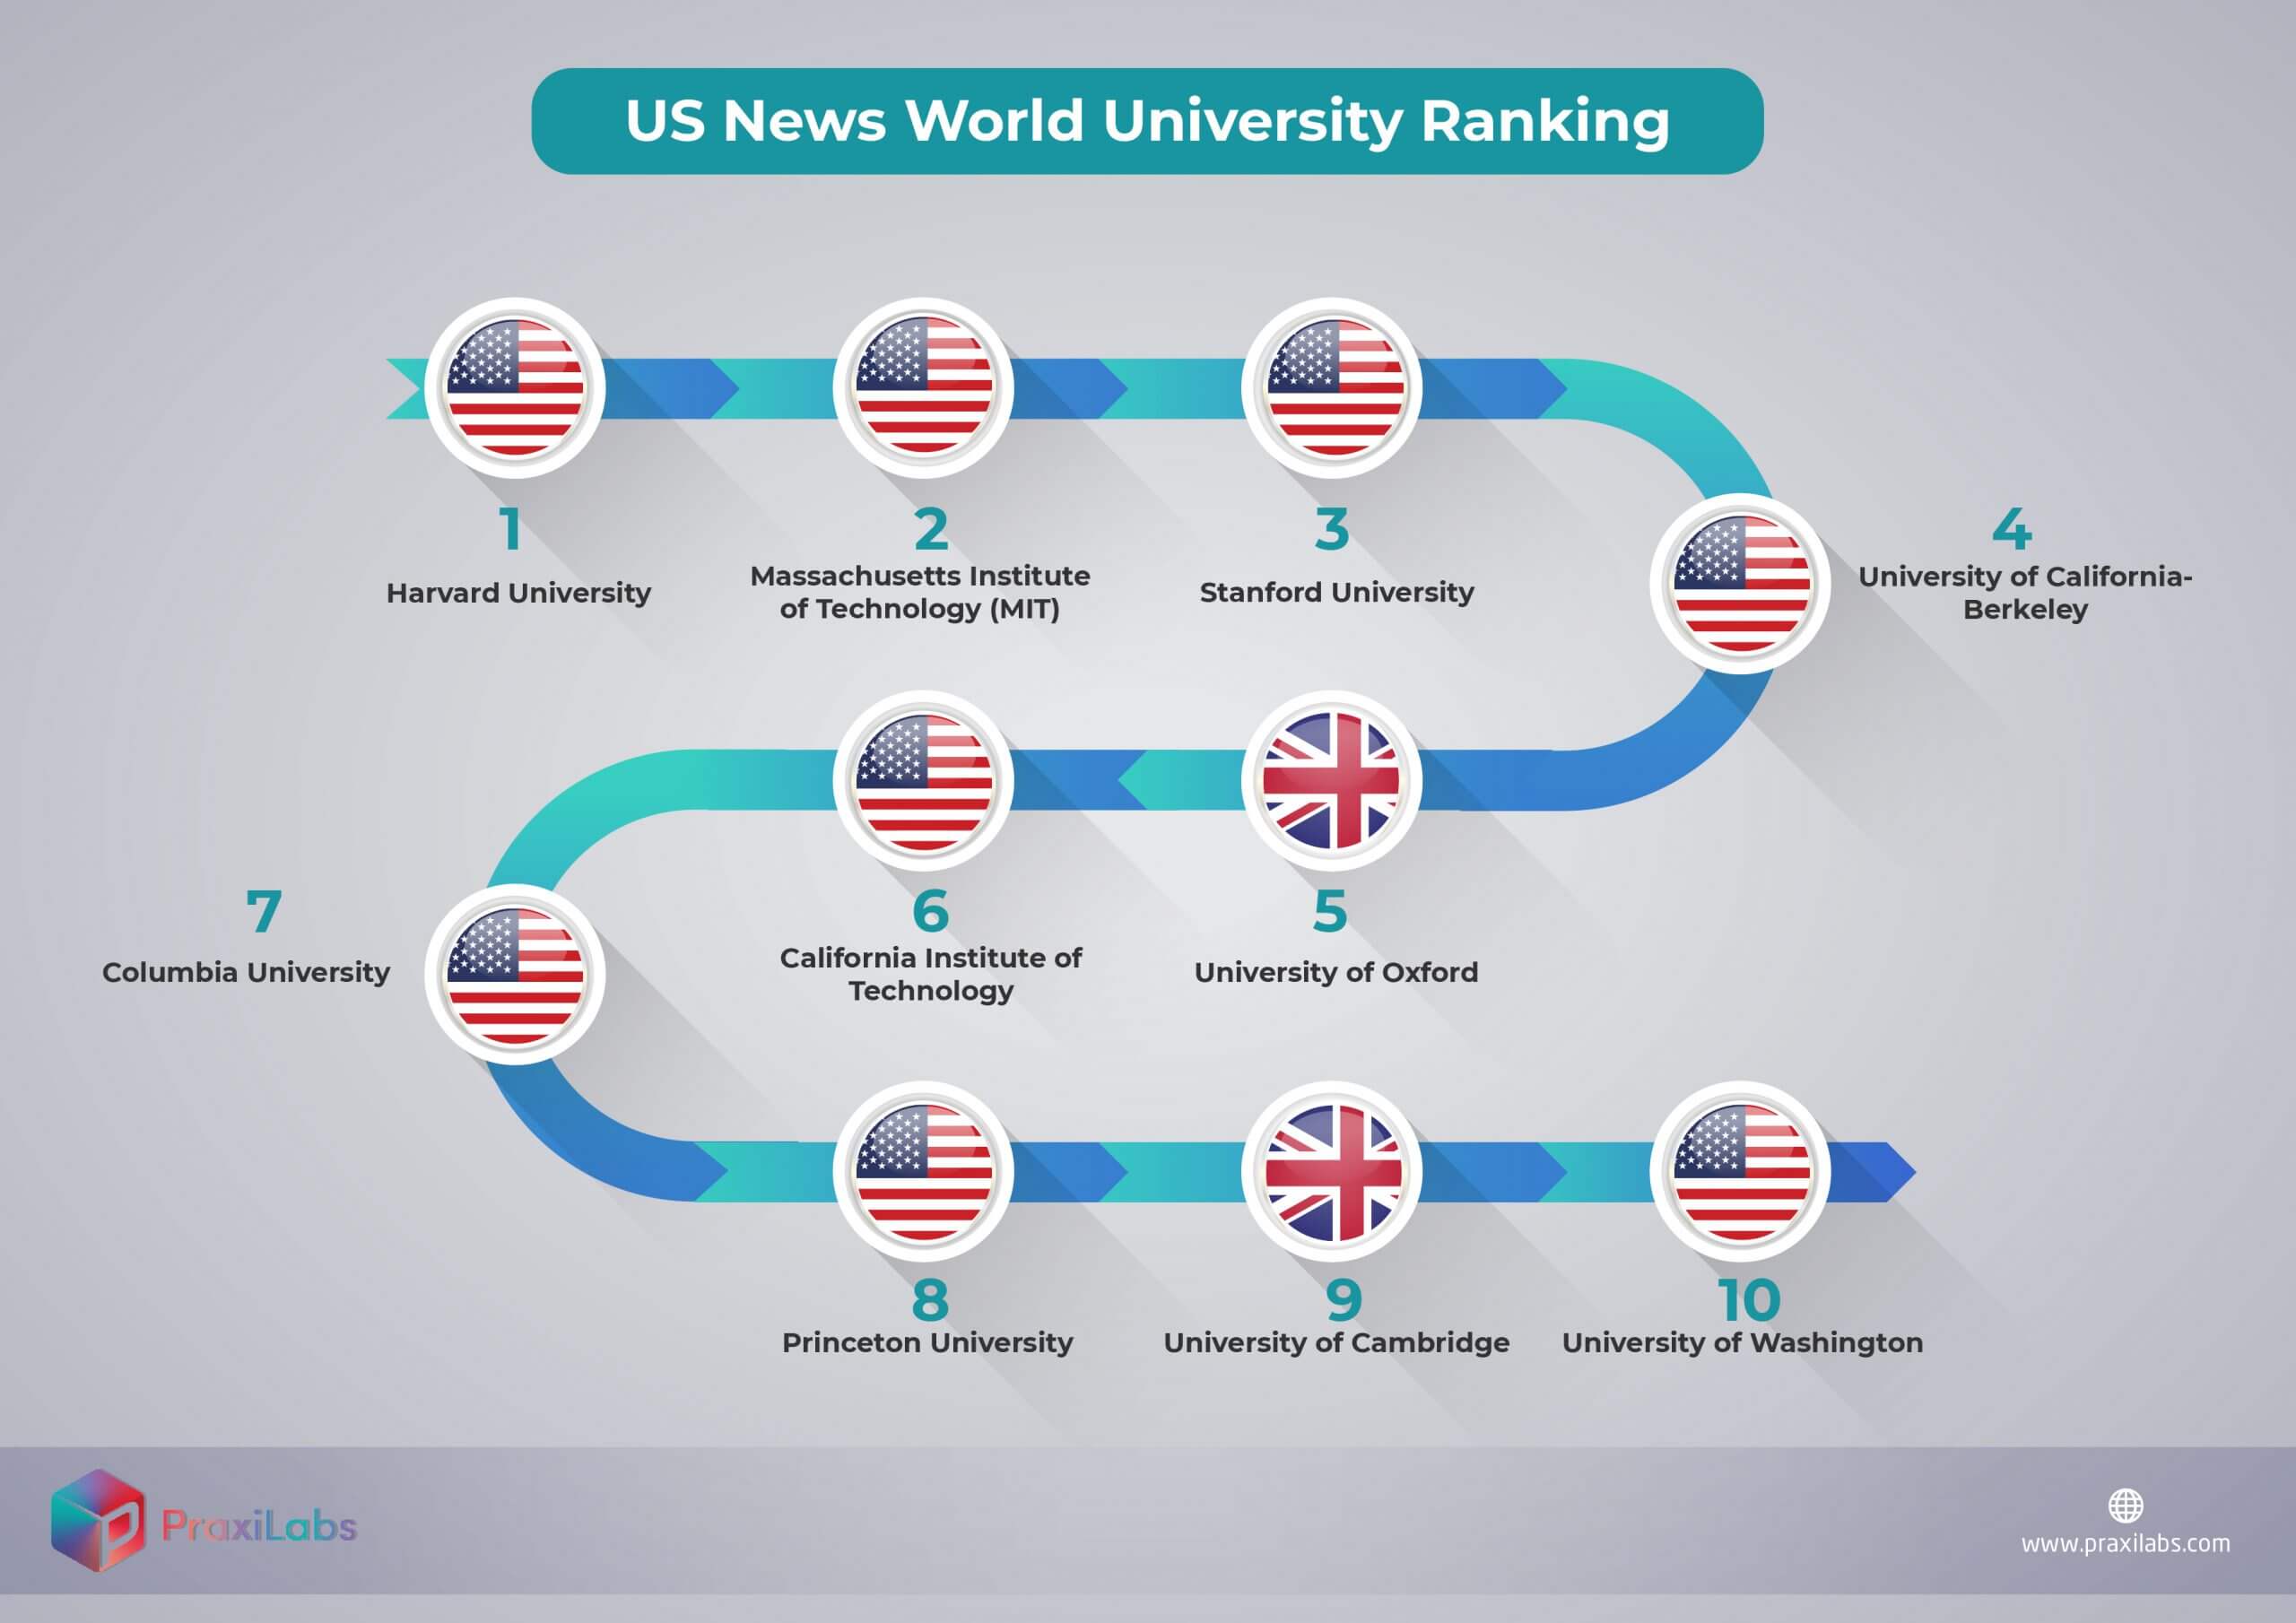 ترتيب الجامعات عالمياً طبقاً لموقع US News